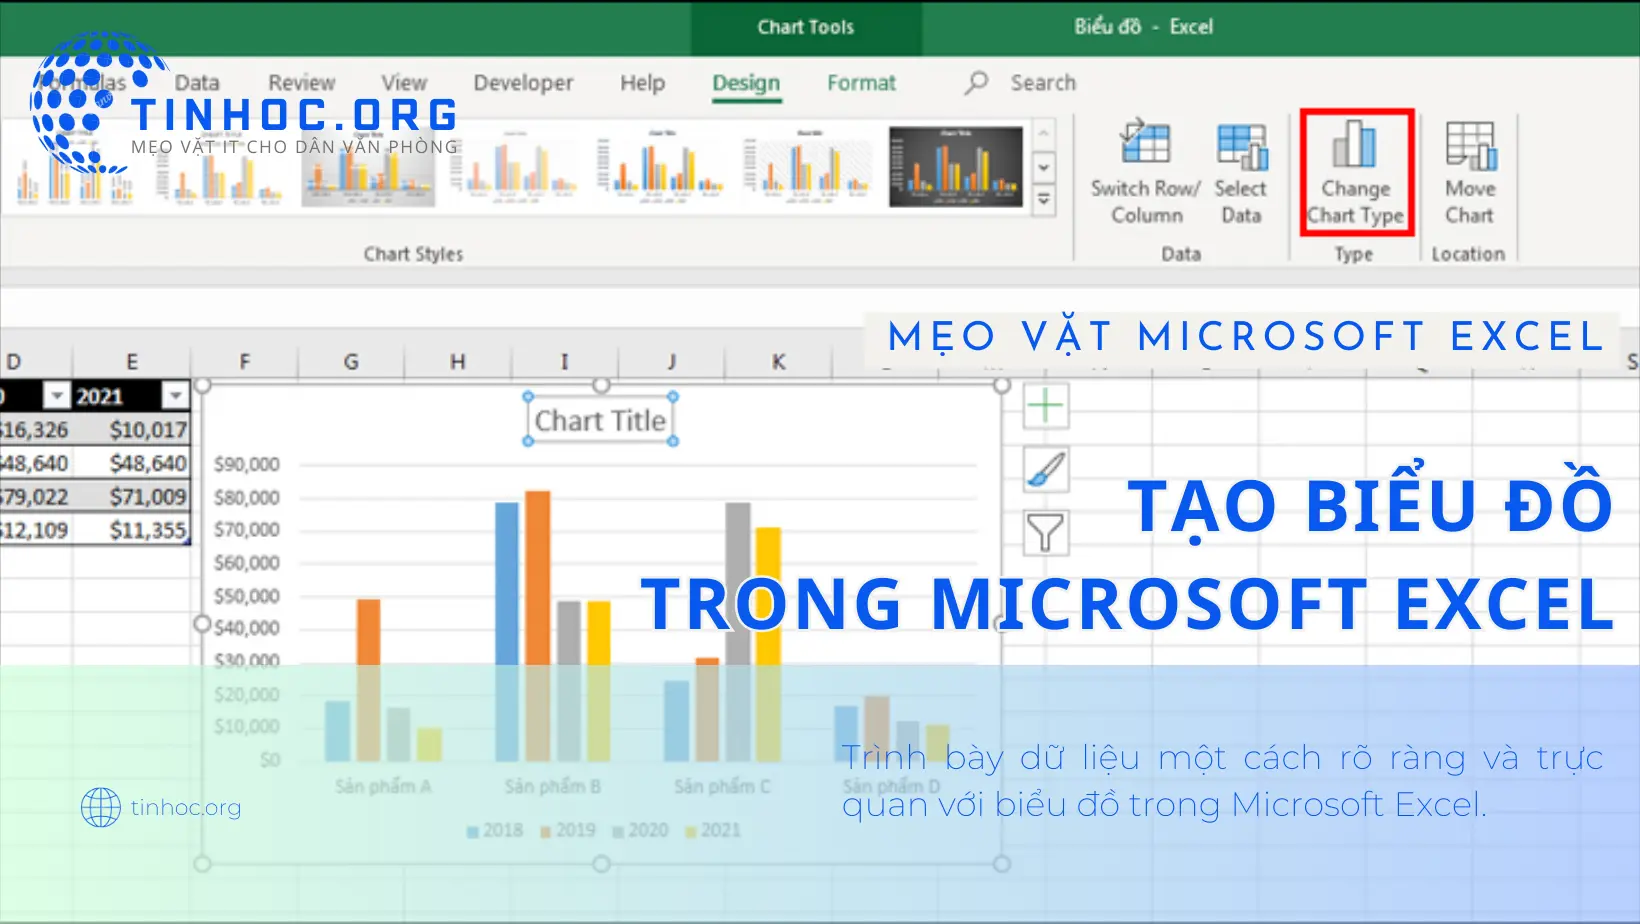 Bài viết này sẽ hướng dẫn chi tiết về cách tạo biểu đồ trong Microsoft Excel và cung cấp một số mẹo vặt giúp bạn làm việc hiệu quả hơn.